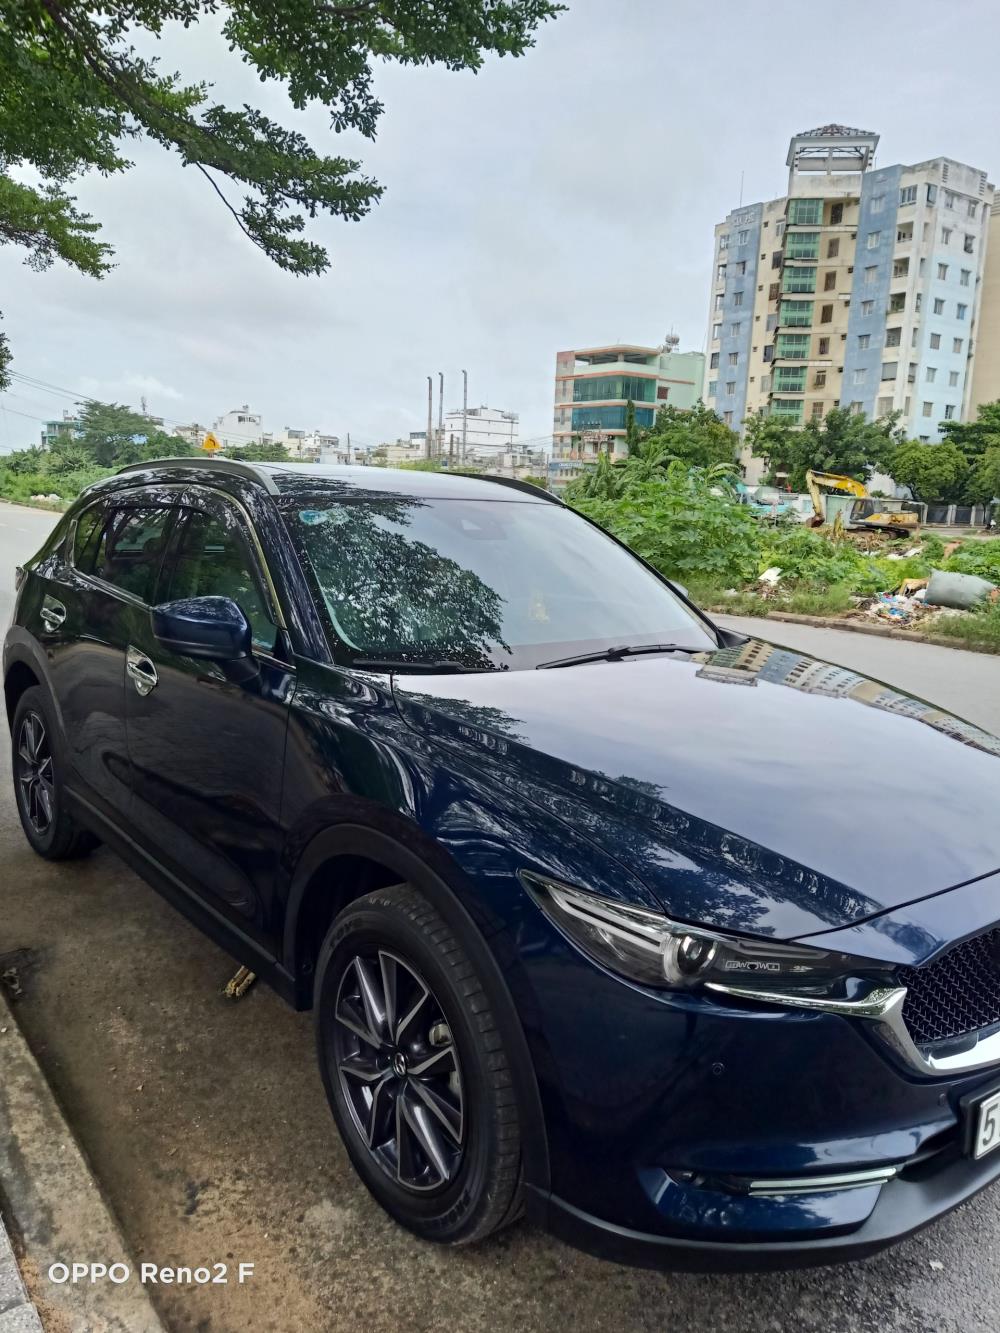 Bán xe Mazda CX 5. 10/2019. 2.5. premium. Chạy 15.000 km. Chính 1 đời chủ. Bao tet hãng. Màu xanh đen.bs 8nut. Ko có số 0 và 4.xe ít đi. Mới 99%.388325